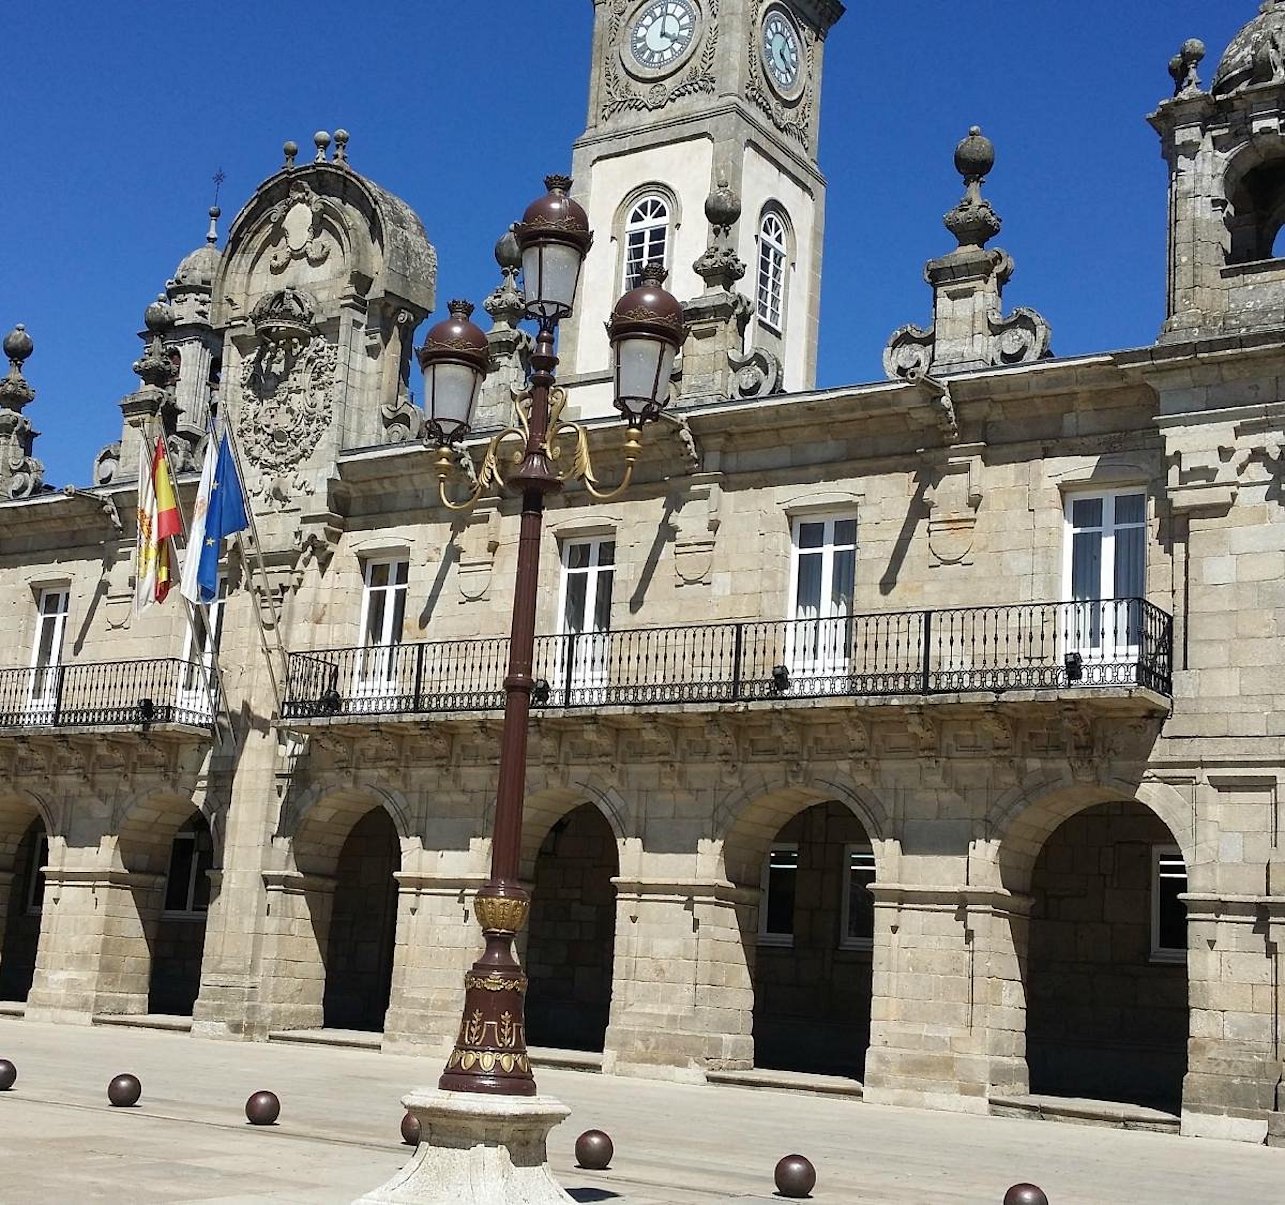 El Ayuntamiento de Lugo se justifica “hemos pedido más documentación del cementerio nuevo de Coeses